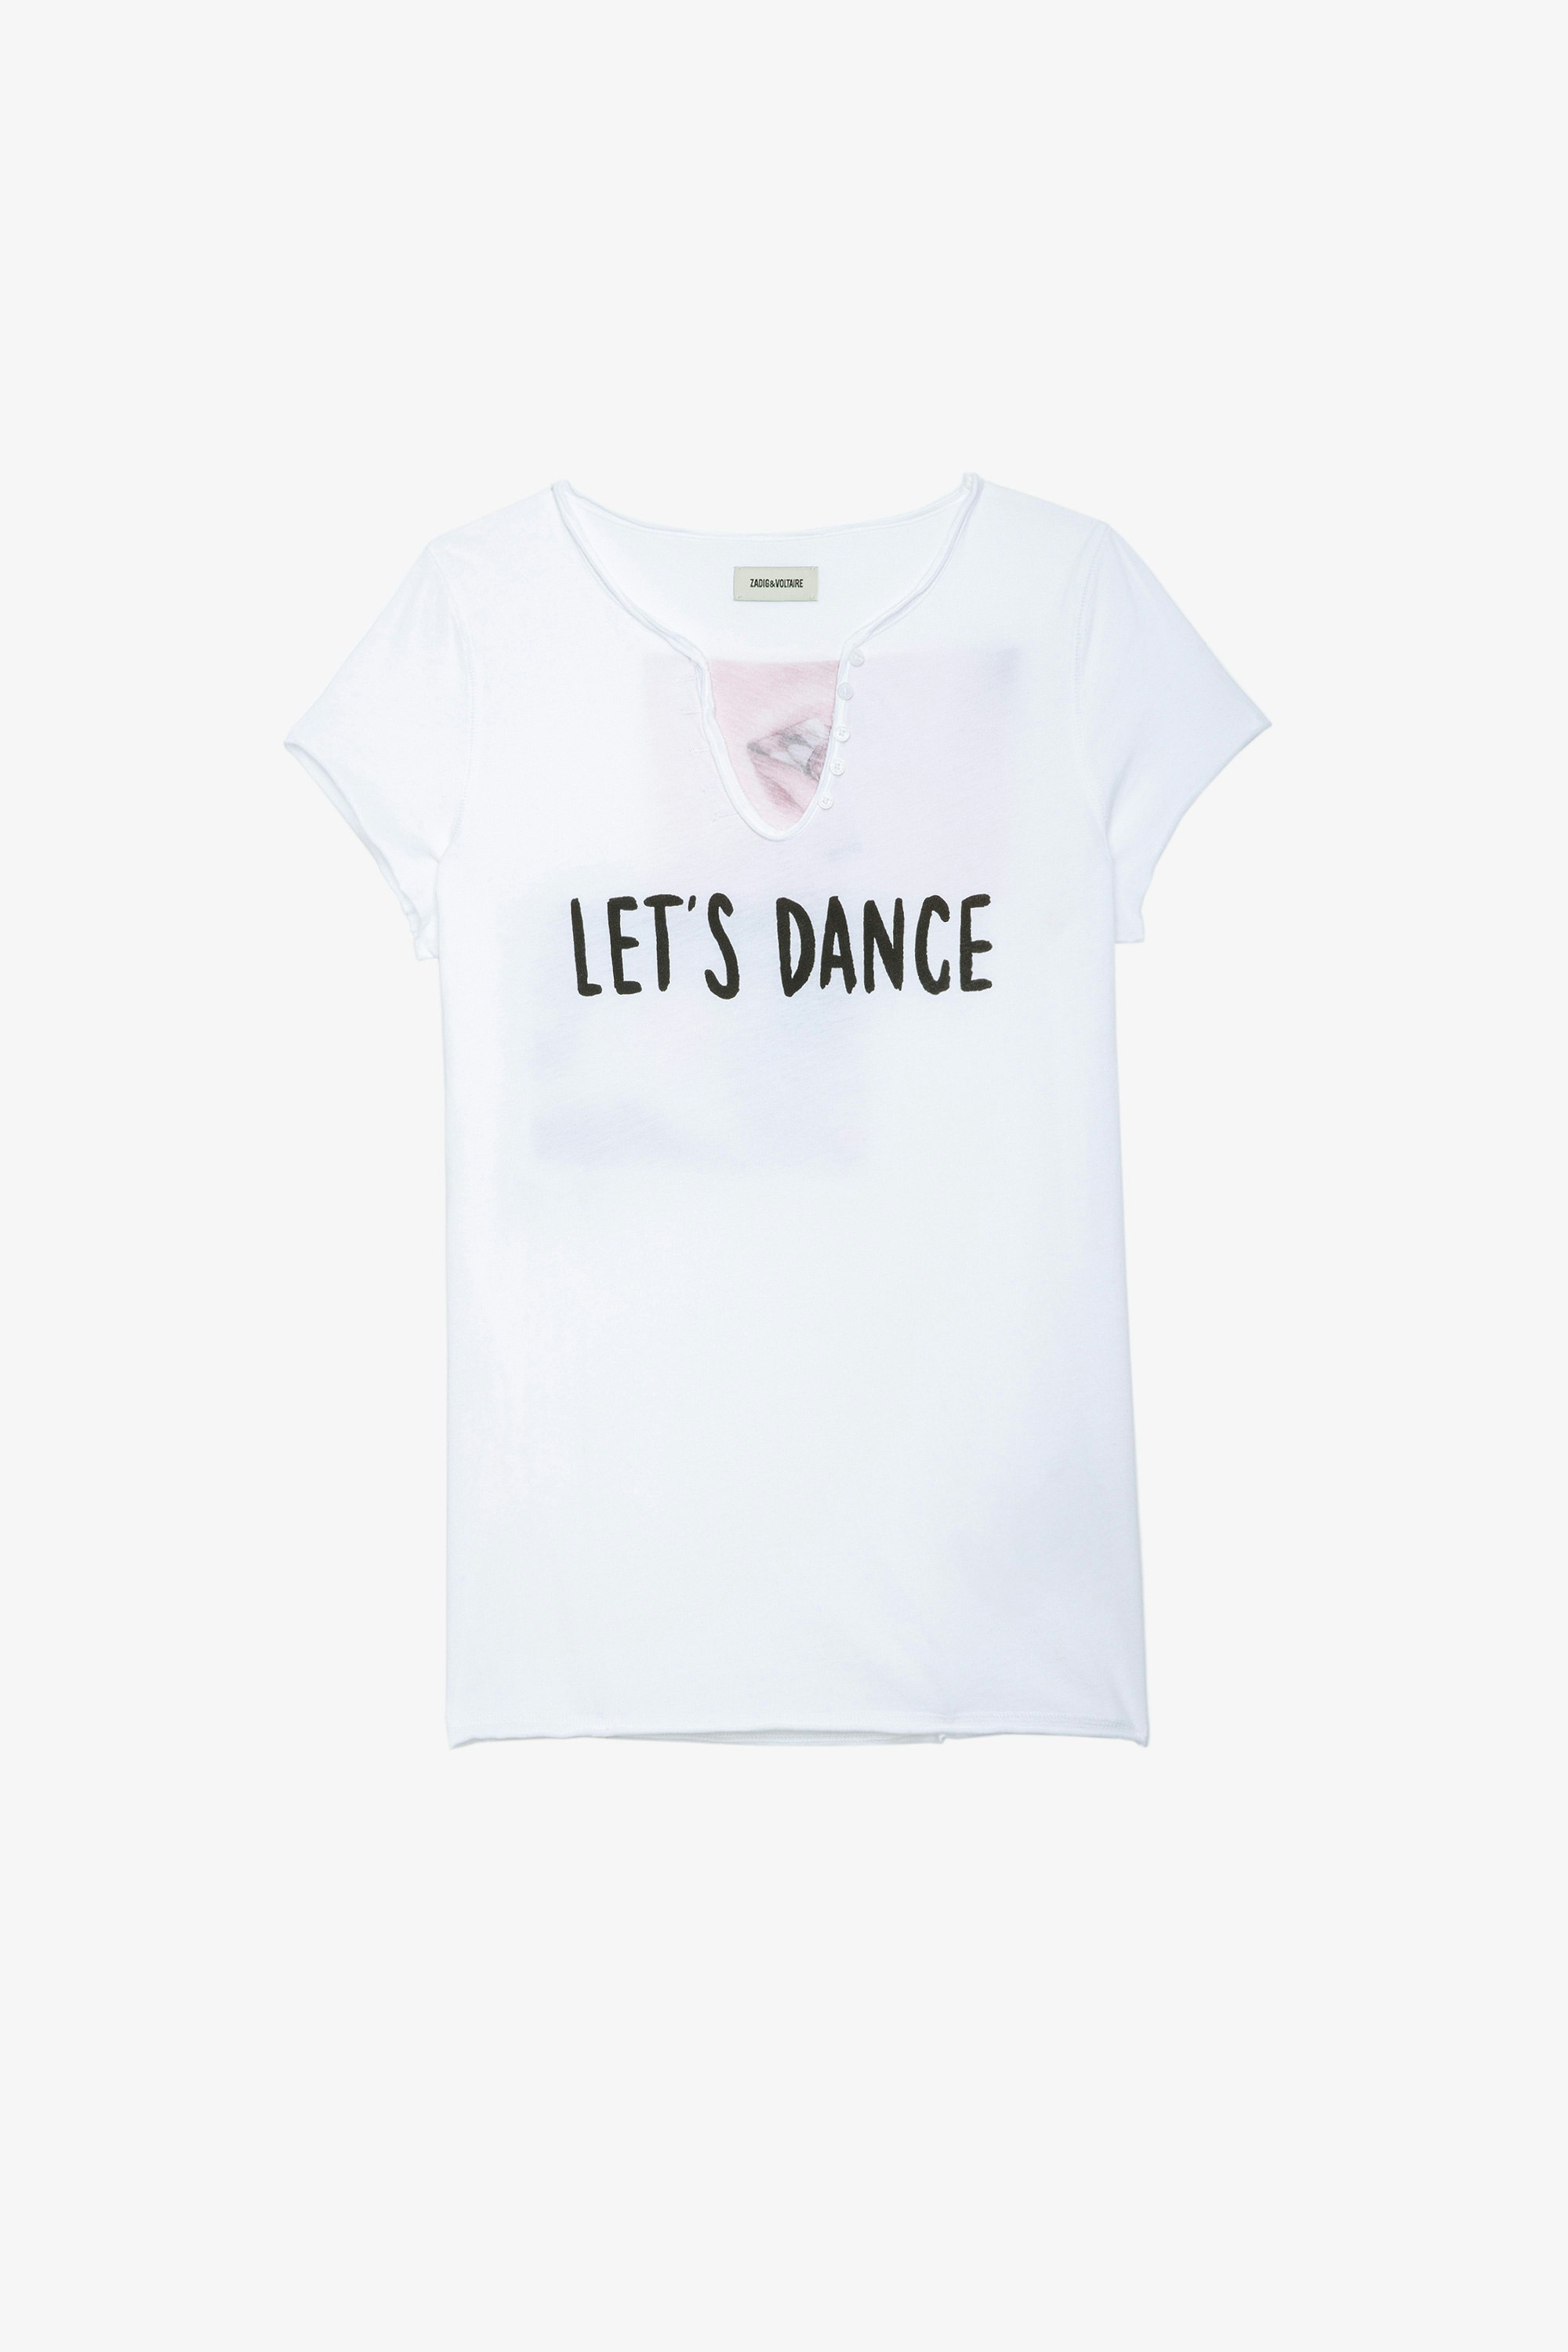 Let's dance Henley T-shirt Women’s “Let's dance” white cotton T-shirt